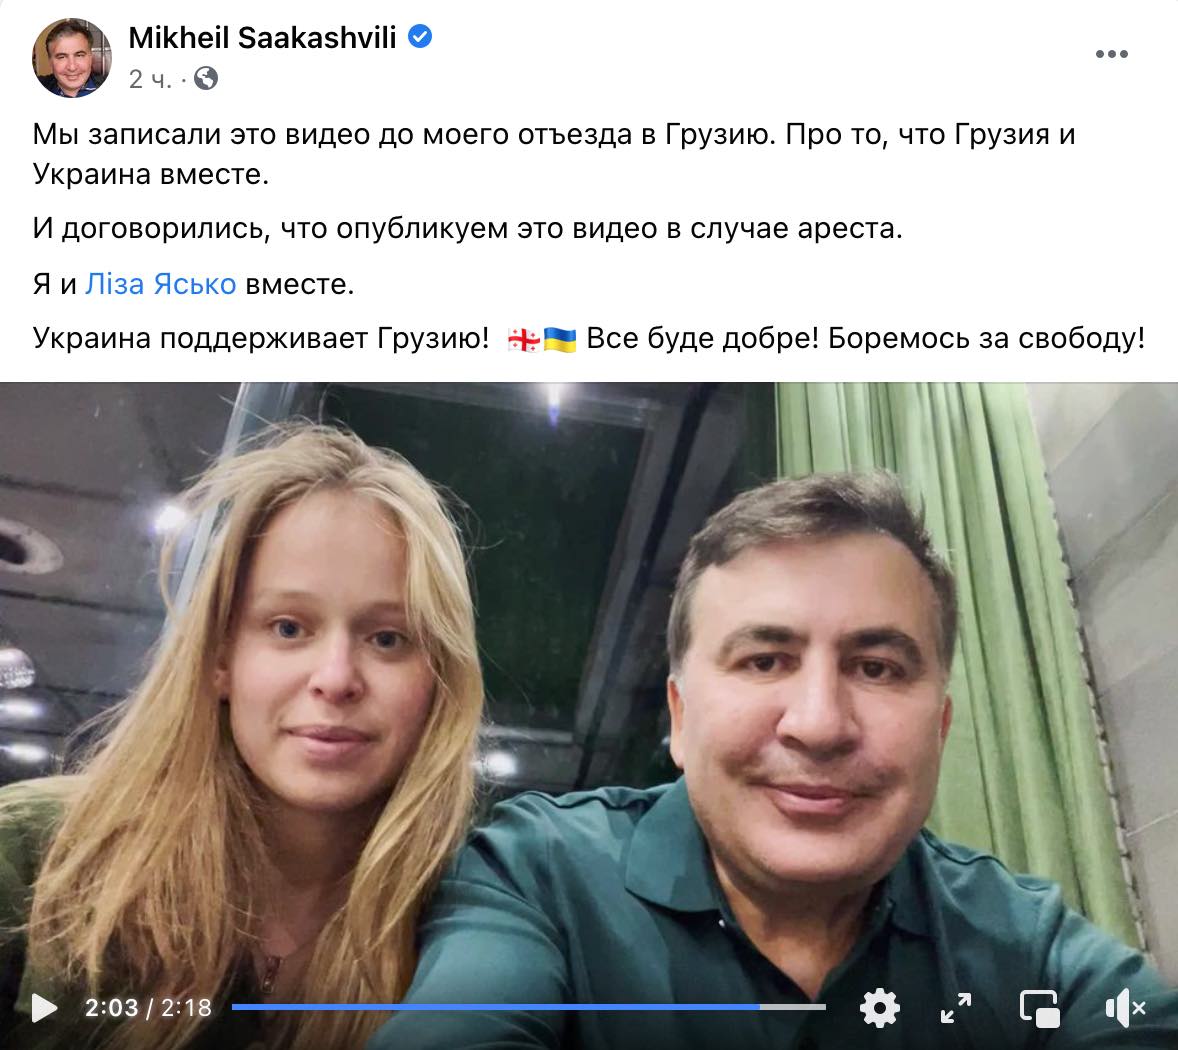 Саакашвили и депутат Ясько объявили об отношениях: видео записали на случай ареста